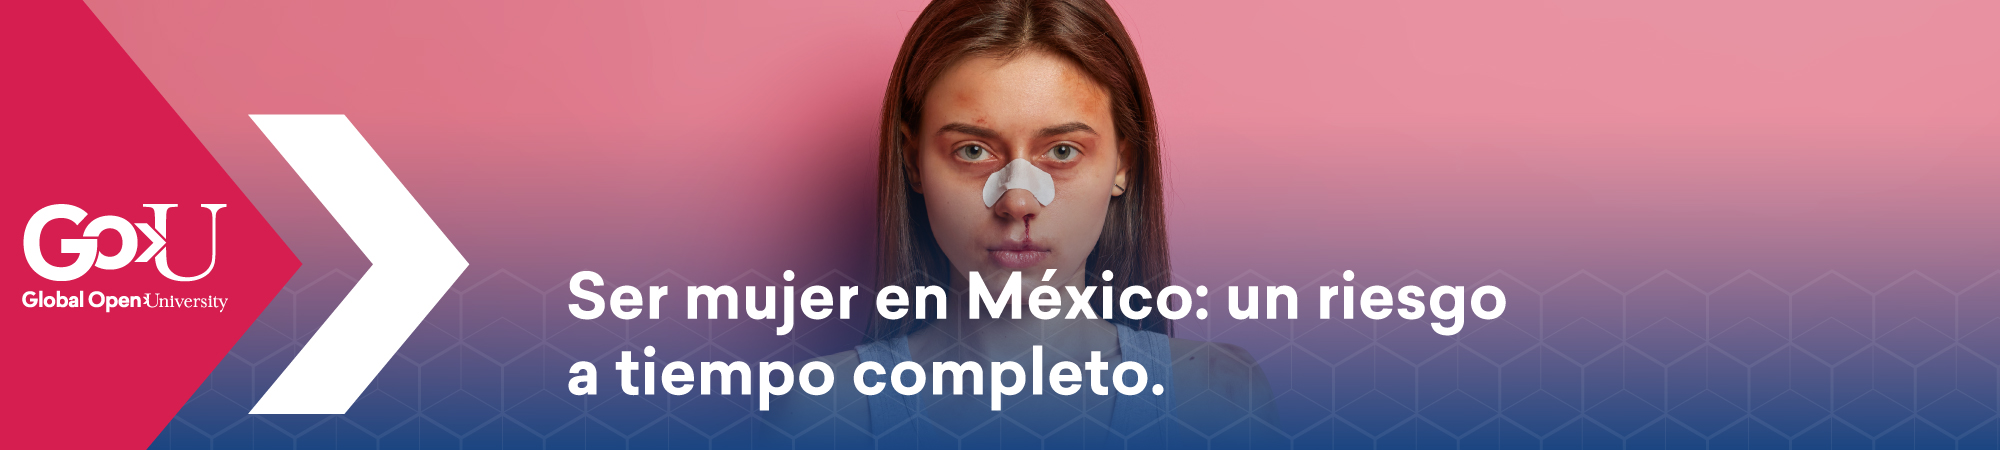 Ser mujer en México: un riesgo a tiempo completo